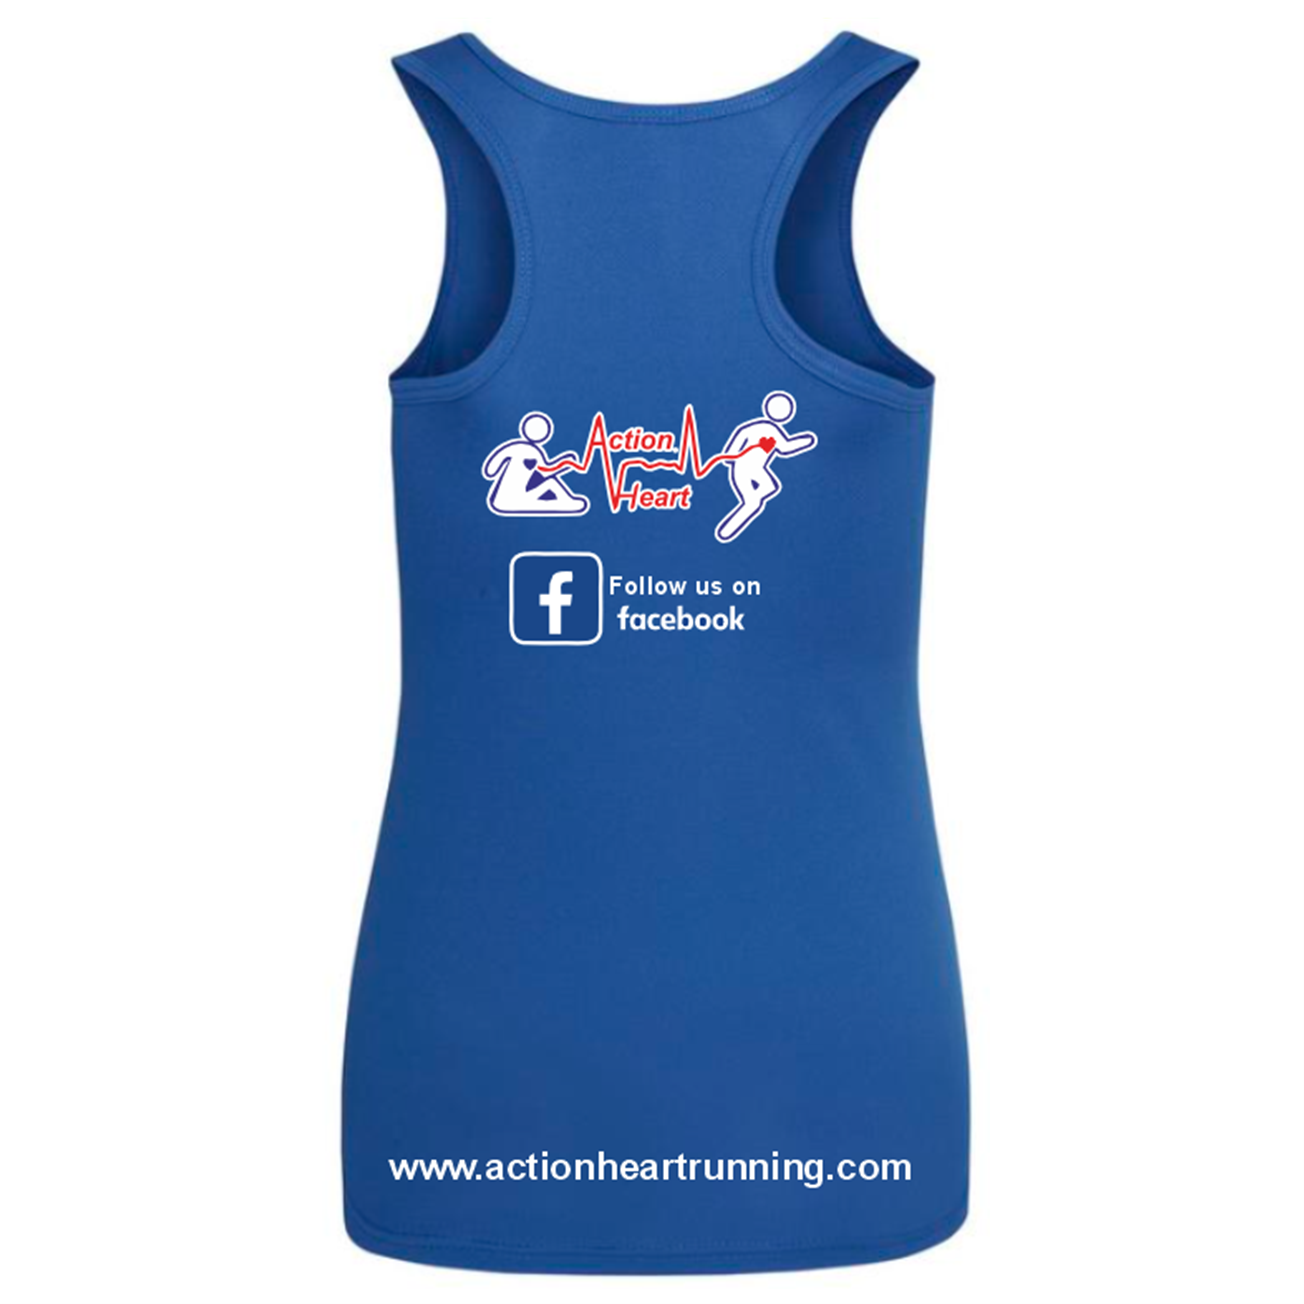 Action Heart Running Club Ladies Vest [JC015]